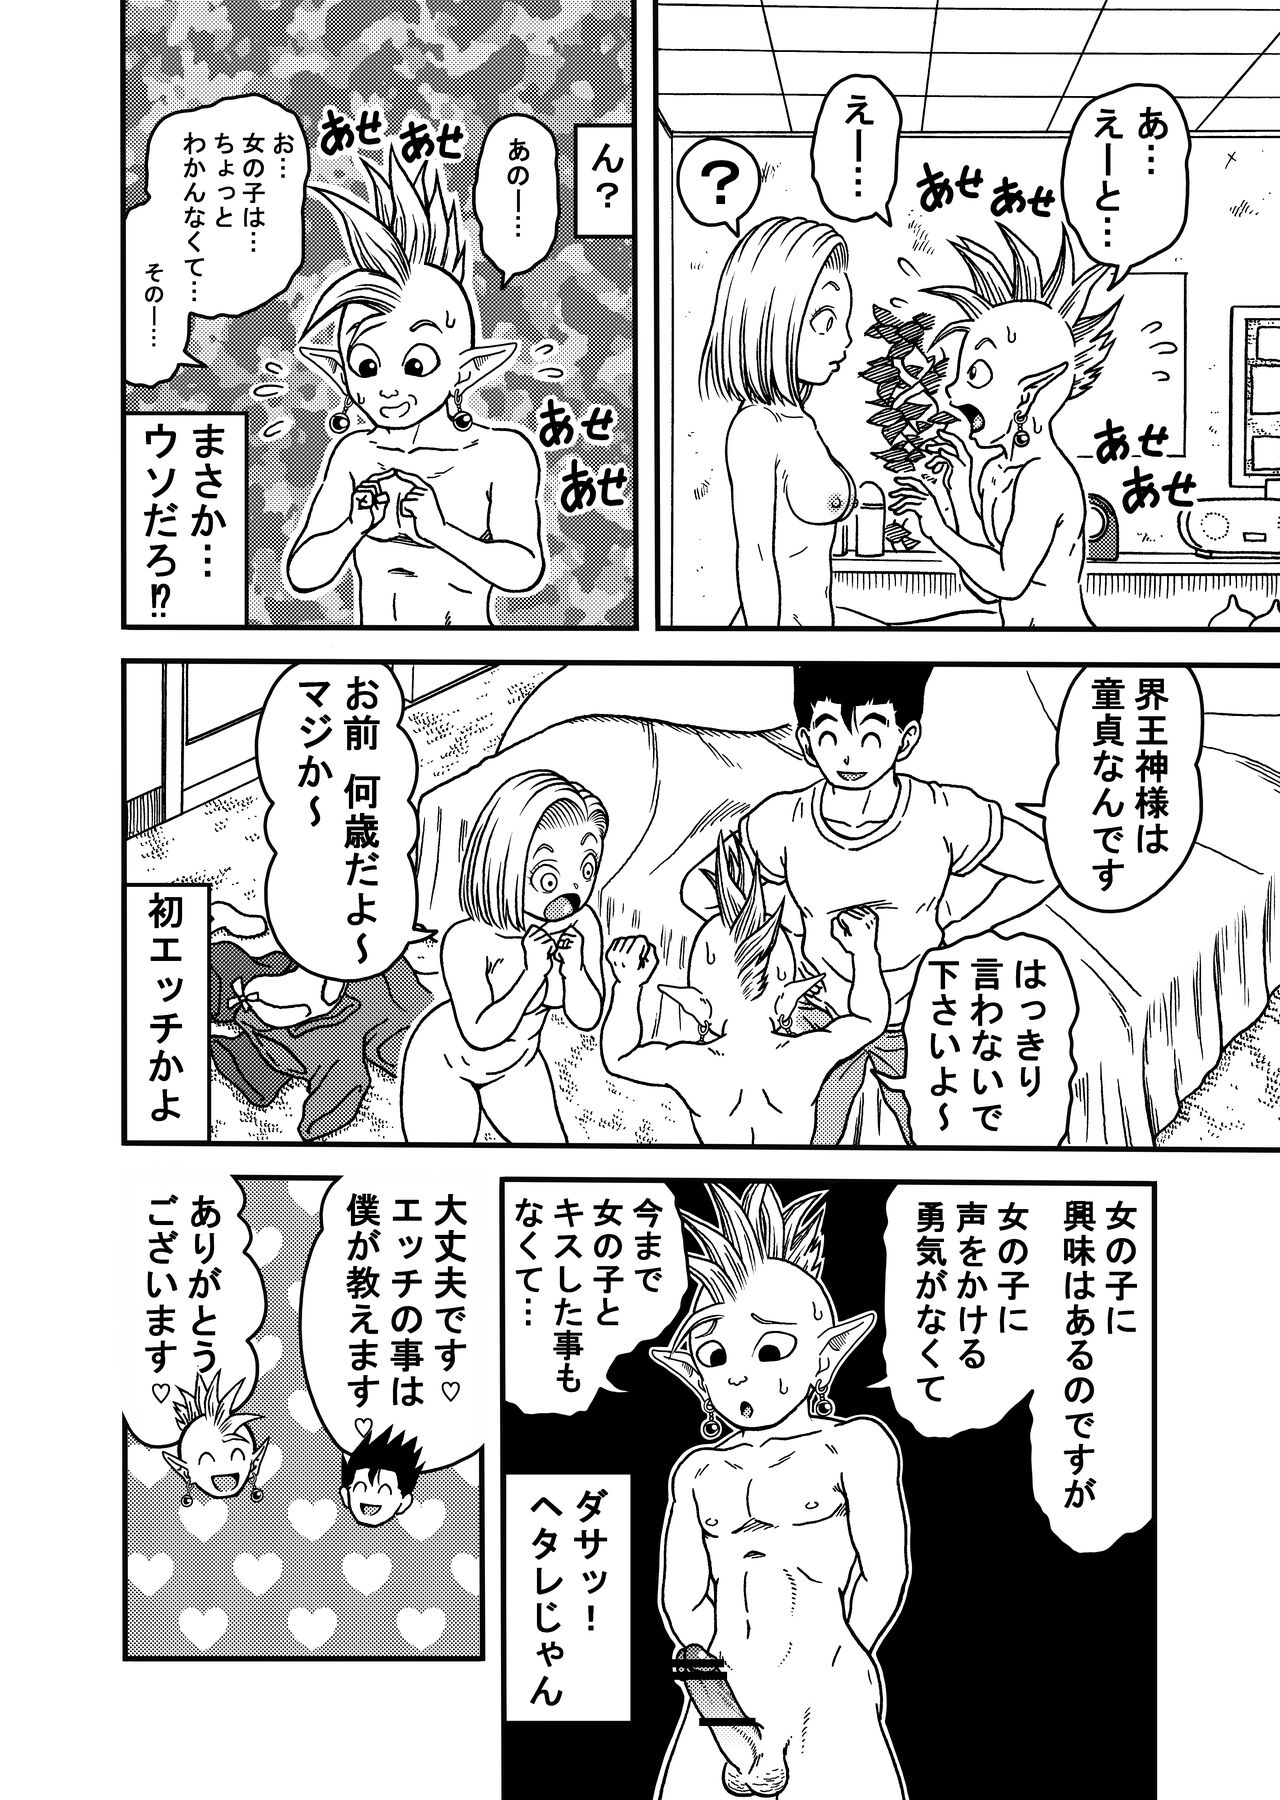 18 Gou NTR Nakadashi On Parade 5 Page 12 IMHentai